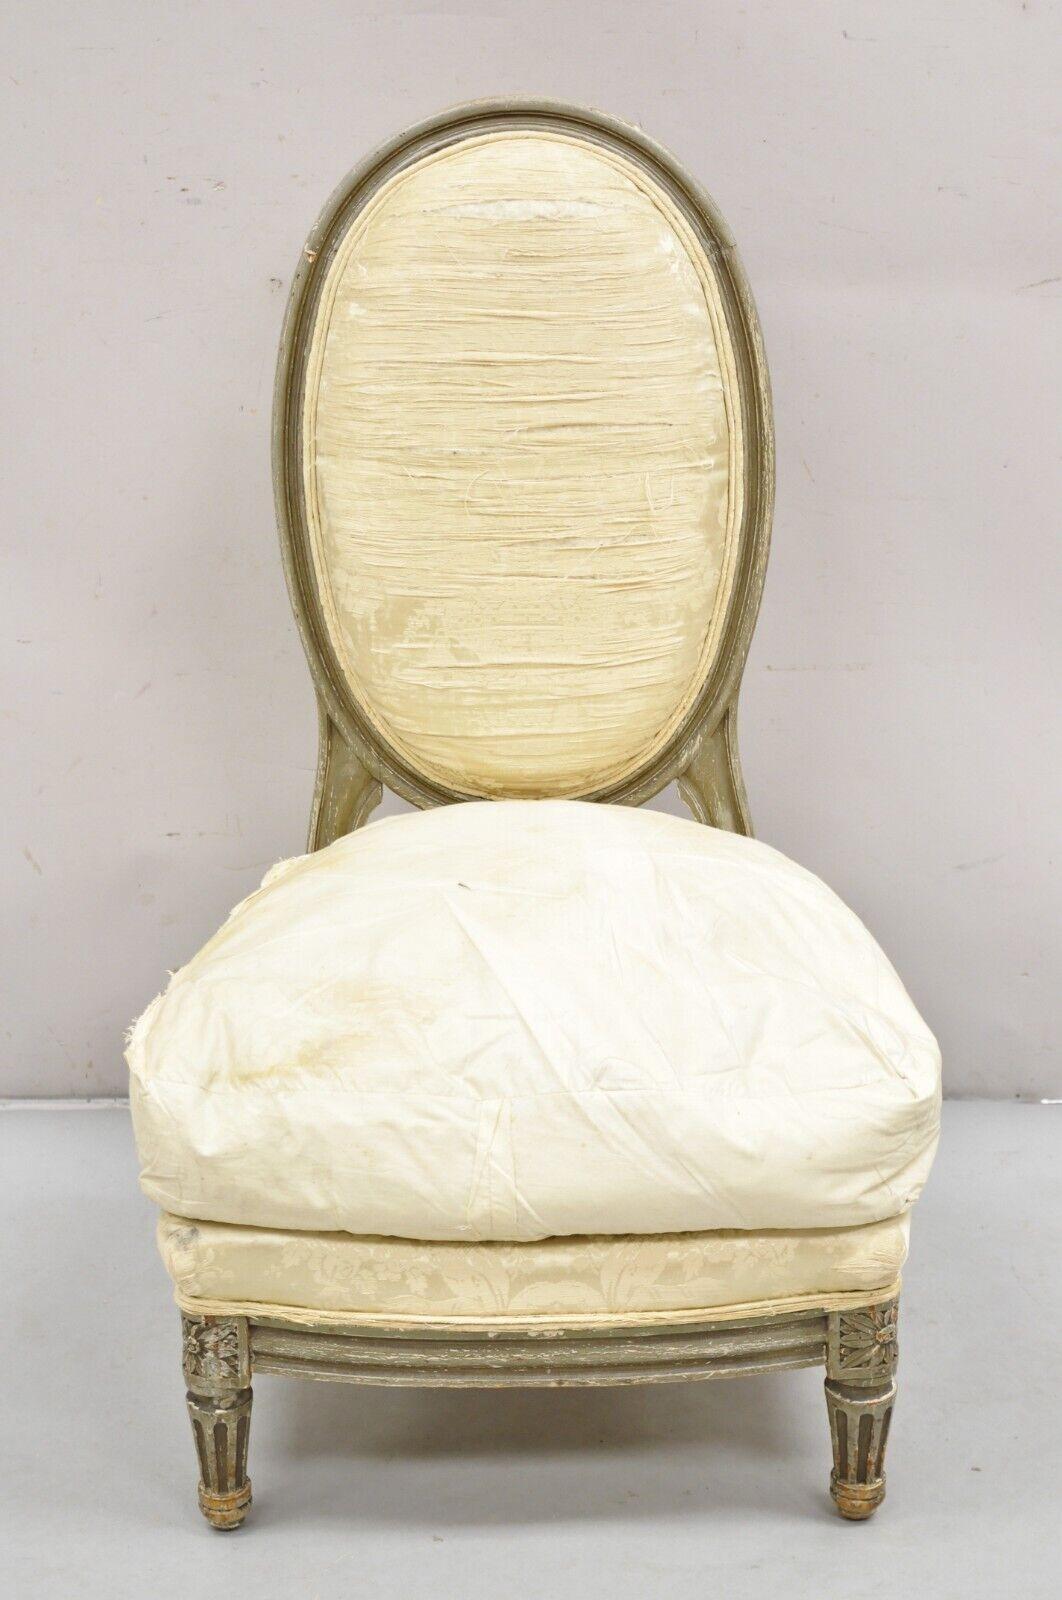 Ancienne chaise basse Boudoir de style Louis XVI peinte avec des dégradés, attribuée à la Maison Maison. L'article présenté est une forme basse et élégante, un cadre en bois massif, un dossier ovale et galbé, un coussin en duvet libre, une